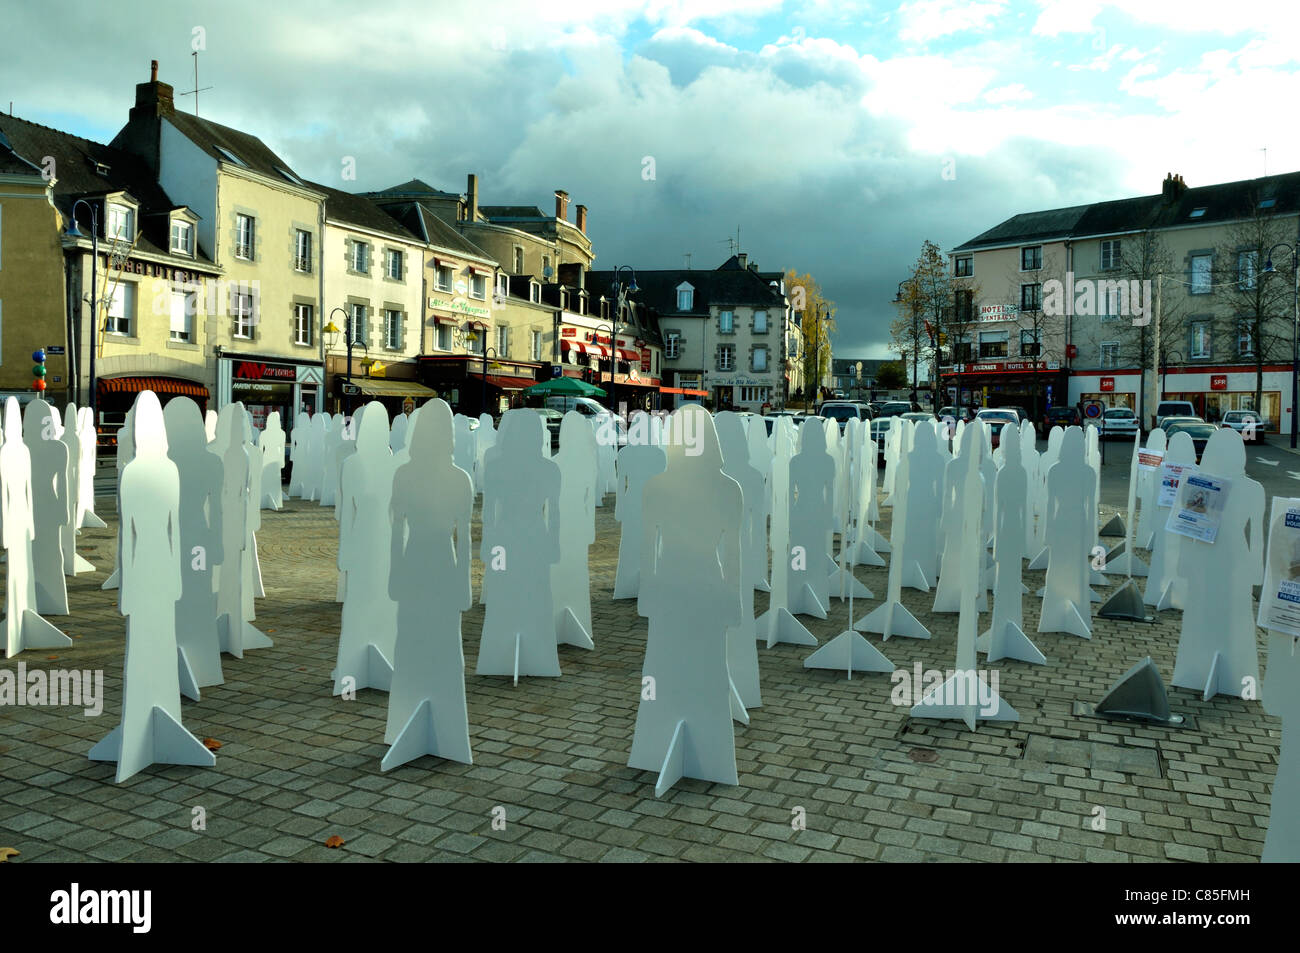 Ciudad de Mayenne, la instalación en el centro de la abstracción de figuras femeninas para elevar la conciencia acerca de la violencia contra la mujer. Foto de stock